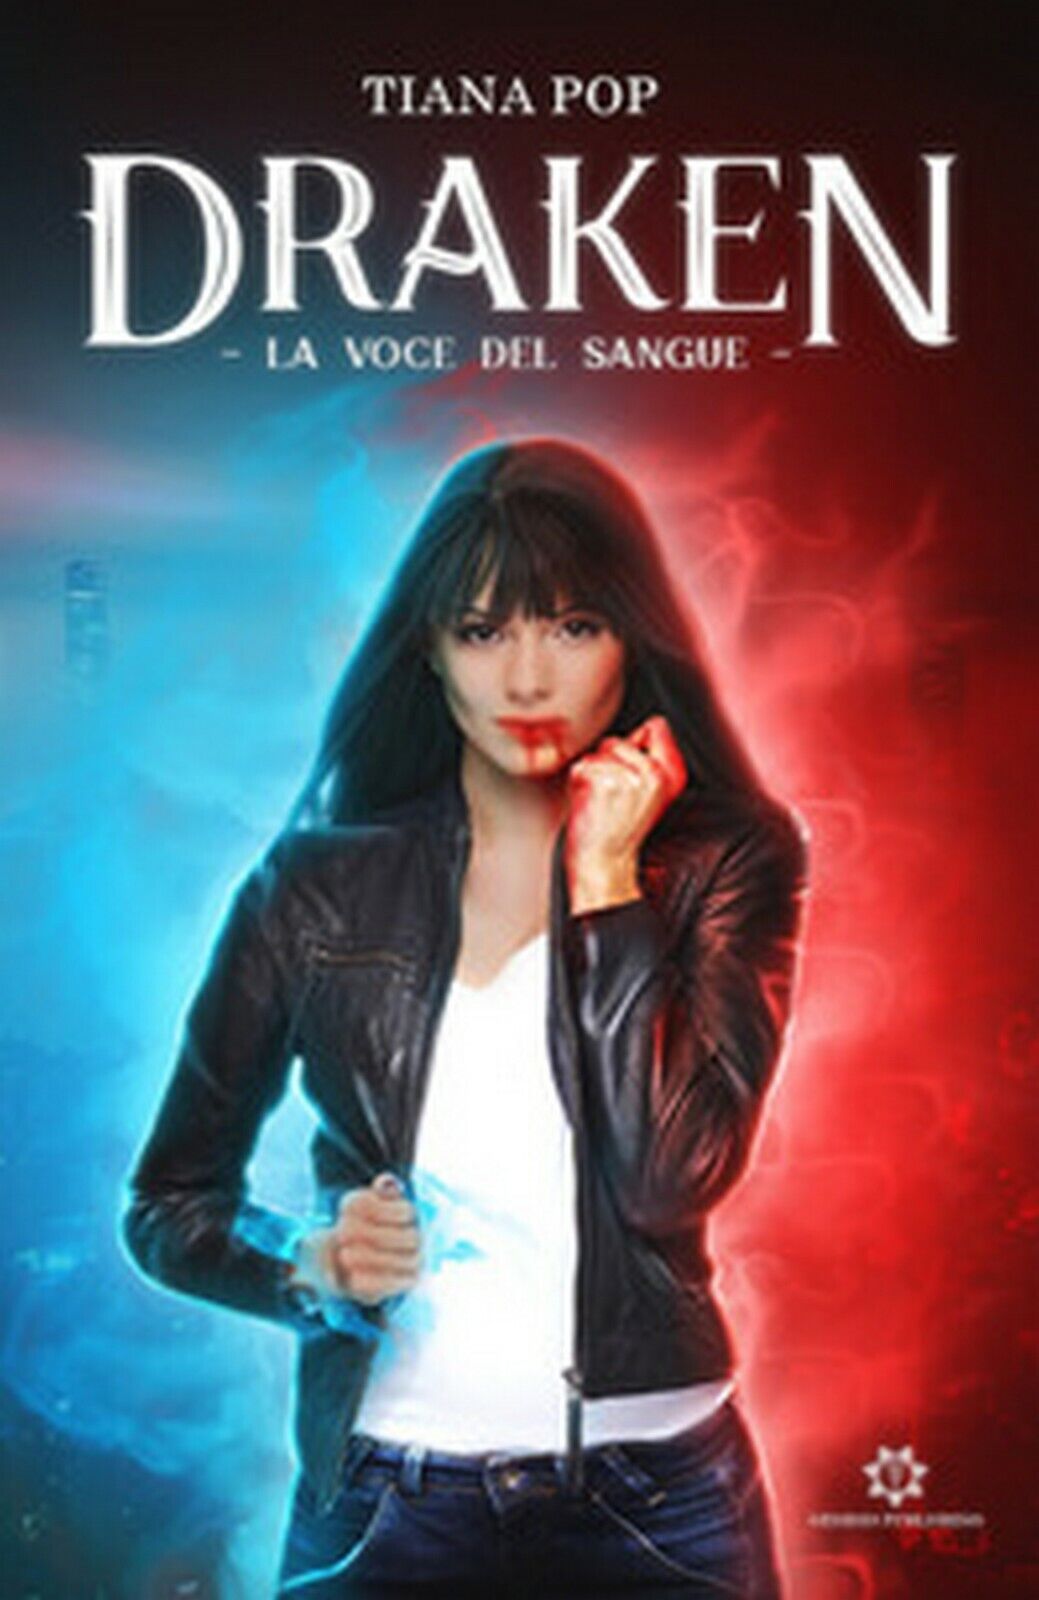 La voce del sangue. Draken  di Tiana Pop,  2019,  Genesis Publishing